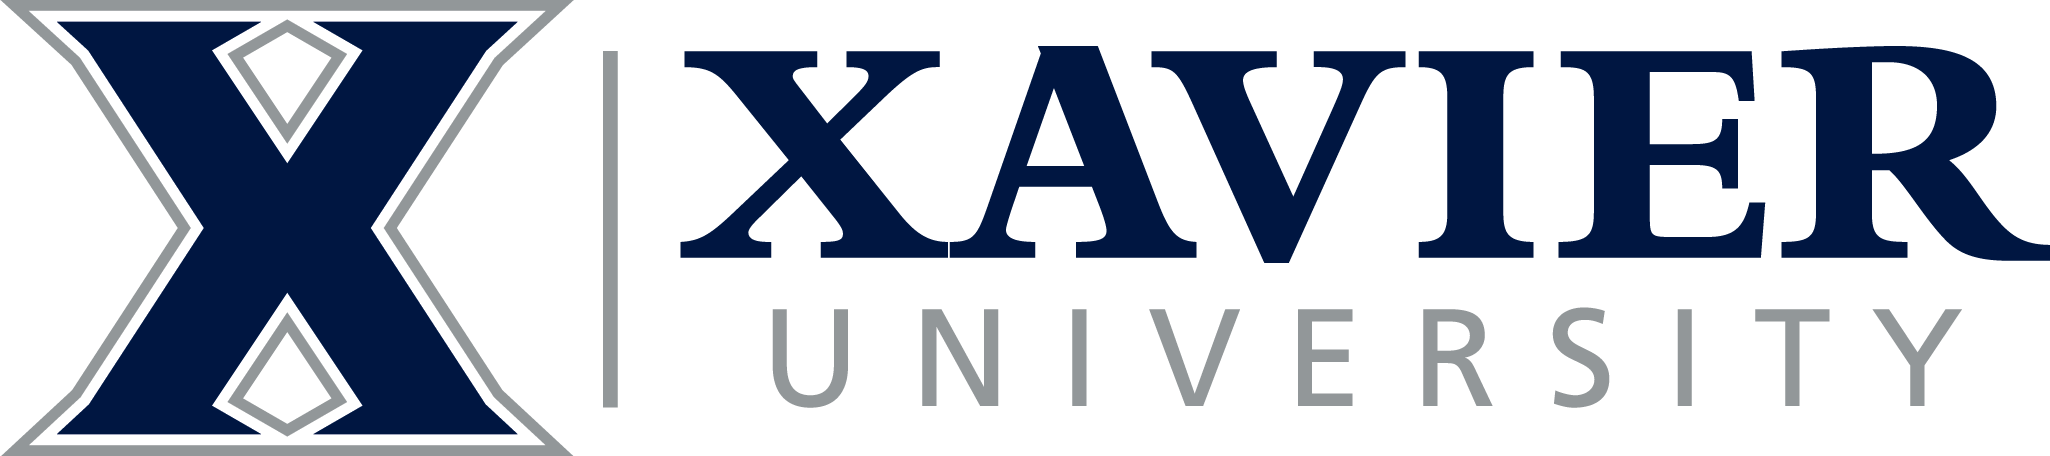 Xavier University Footer Logo